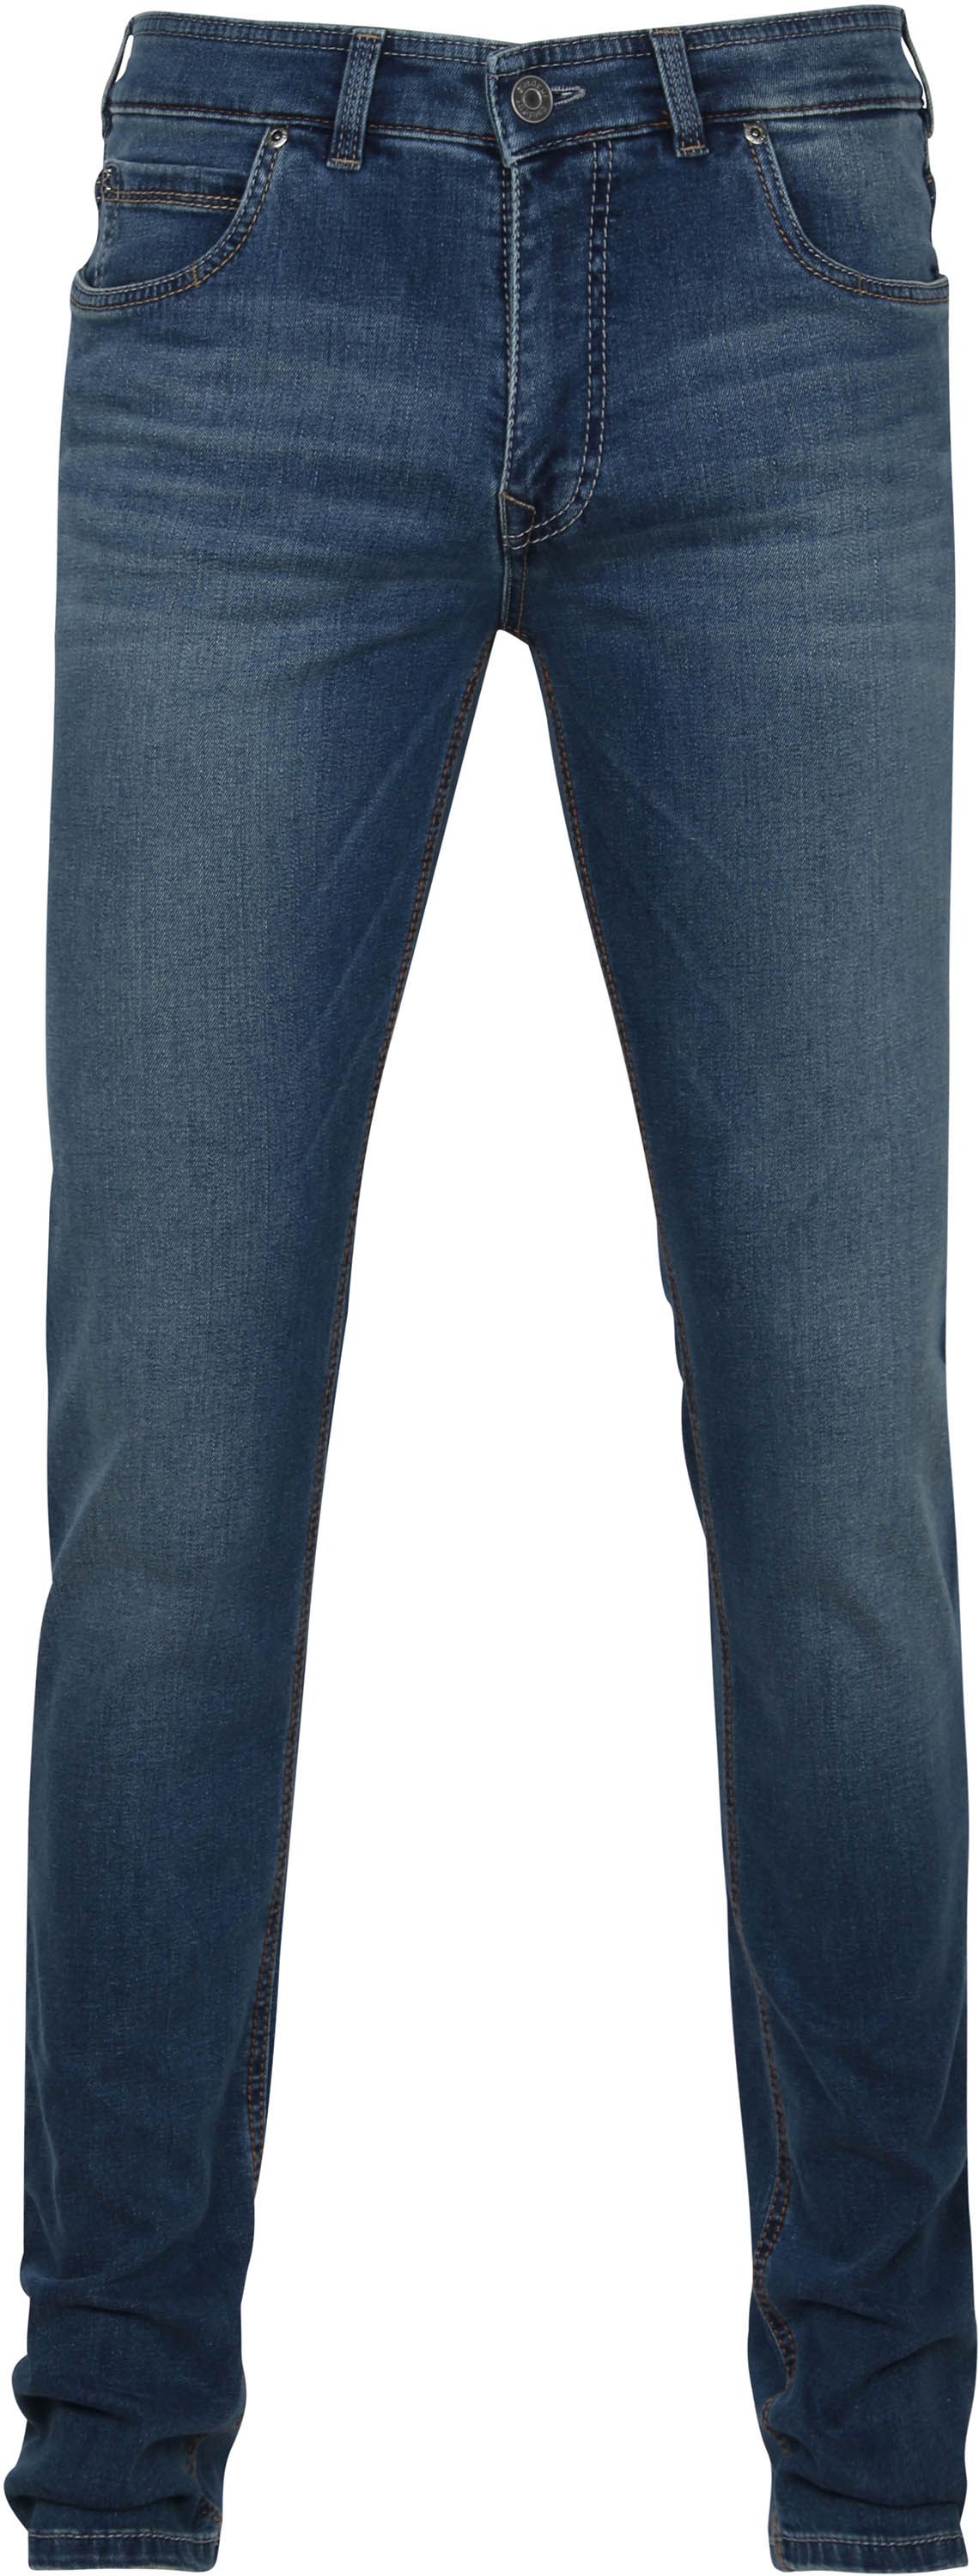 Gardeur Batu Jeans Indigo Blue size W 31